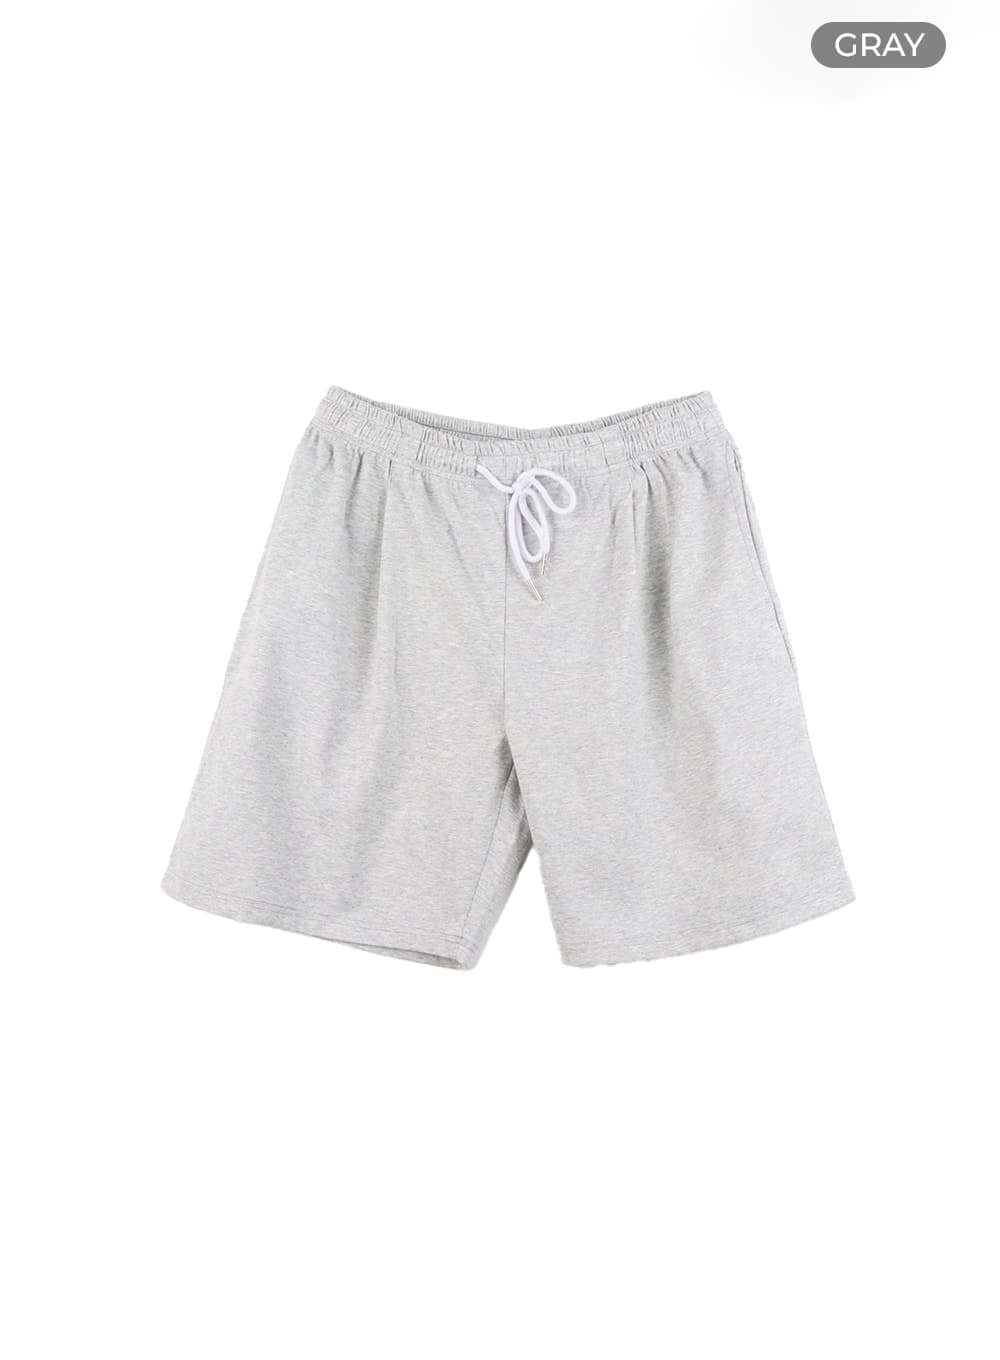 mens-basic-cotton-shorts-ia402